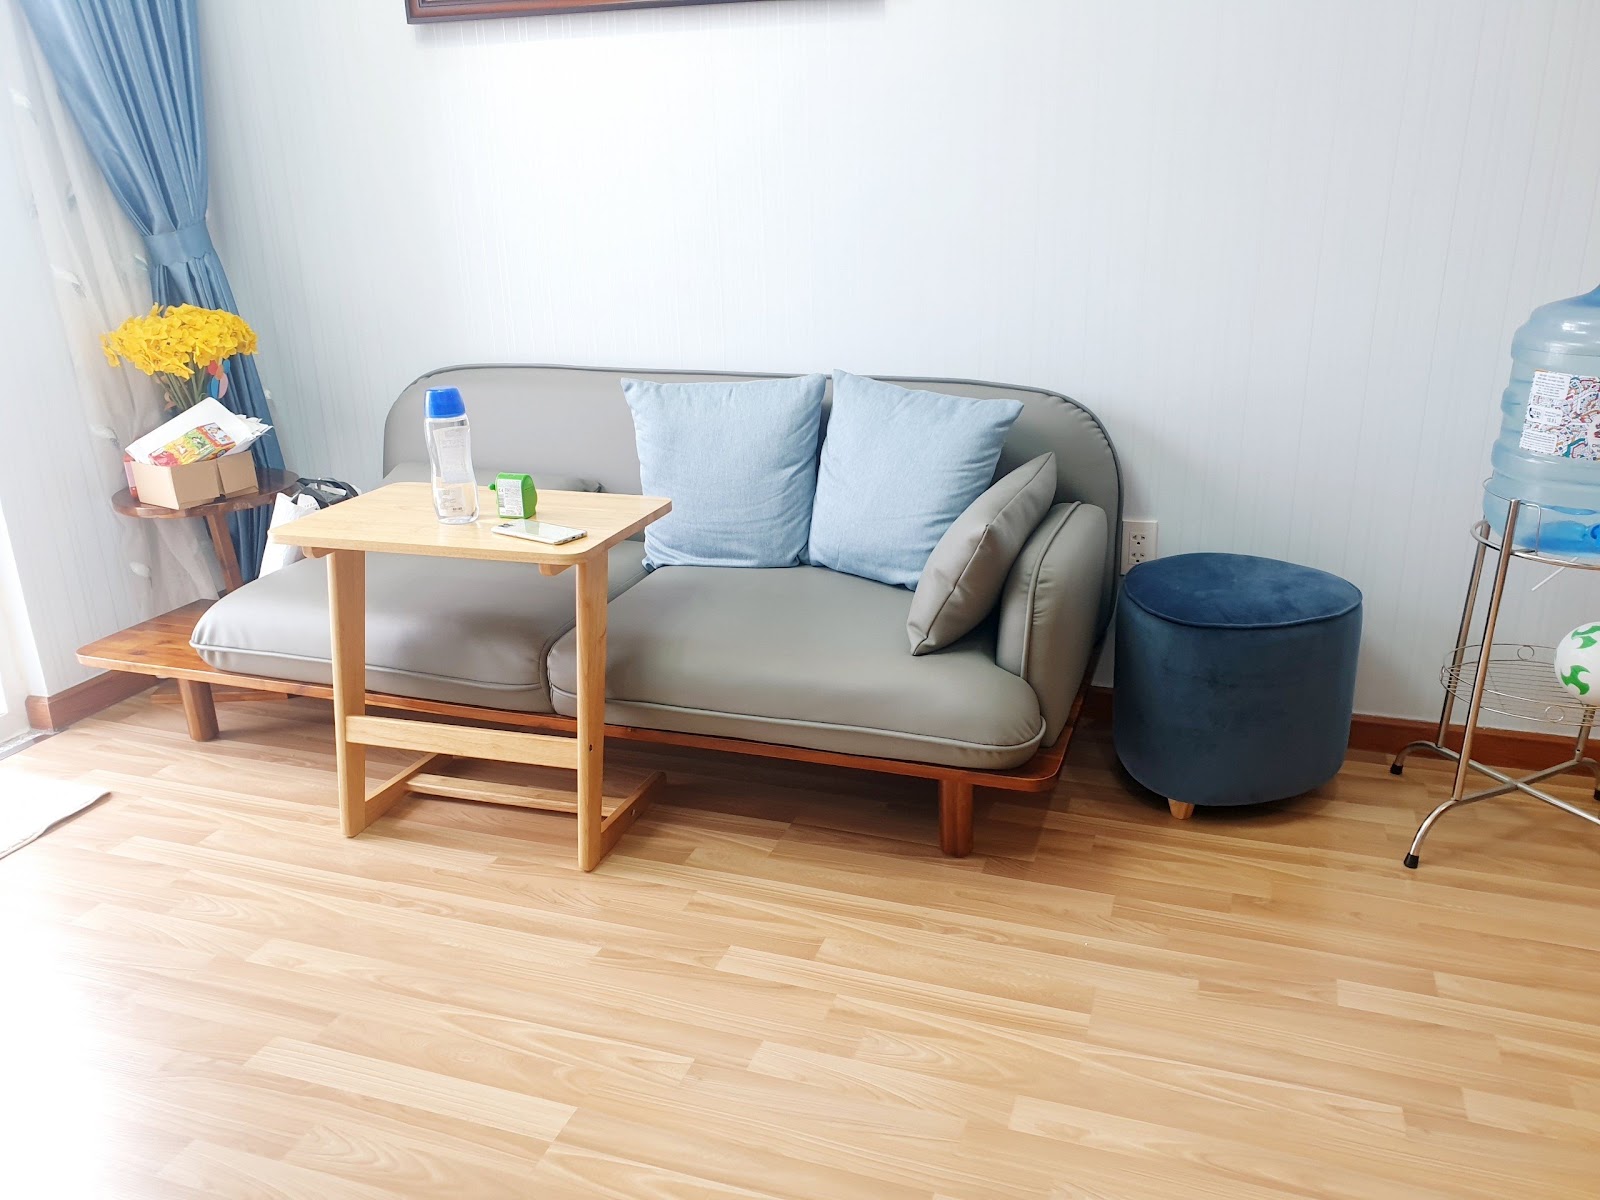 Sofa đơn với kích thước vừa phải không chỉ giúp phòng khách căn hộ nhỏ nhìn vừa sang trọng, tiện nghi mà còn rất rộng rãi.